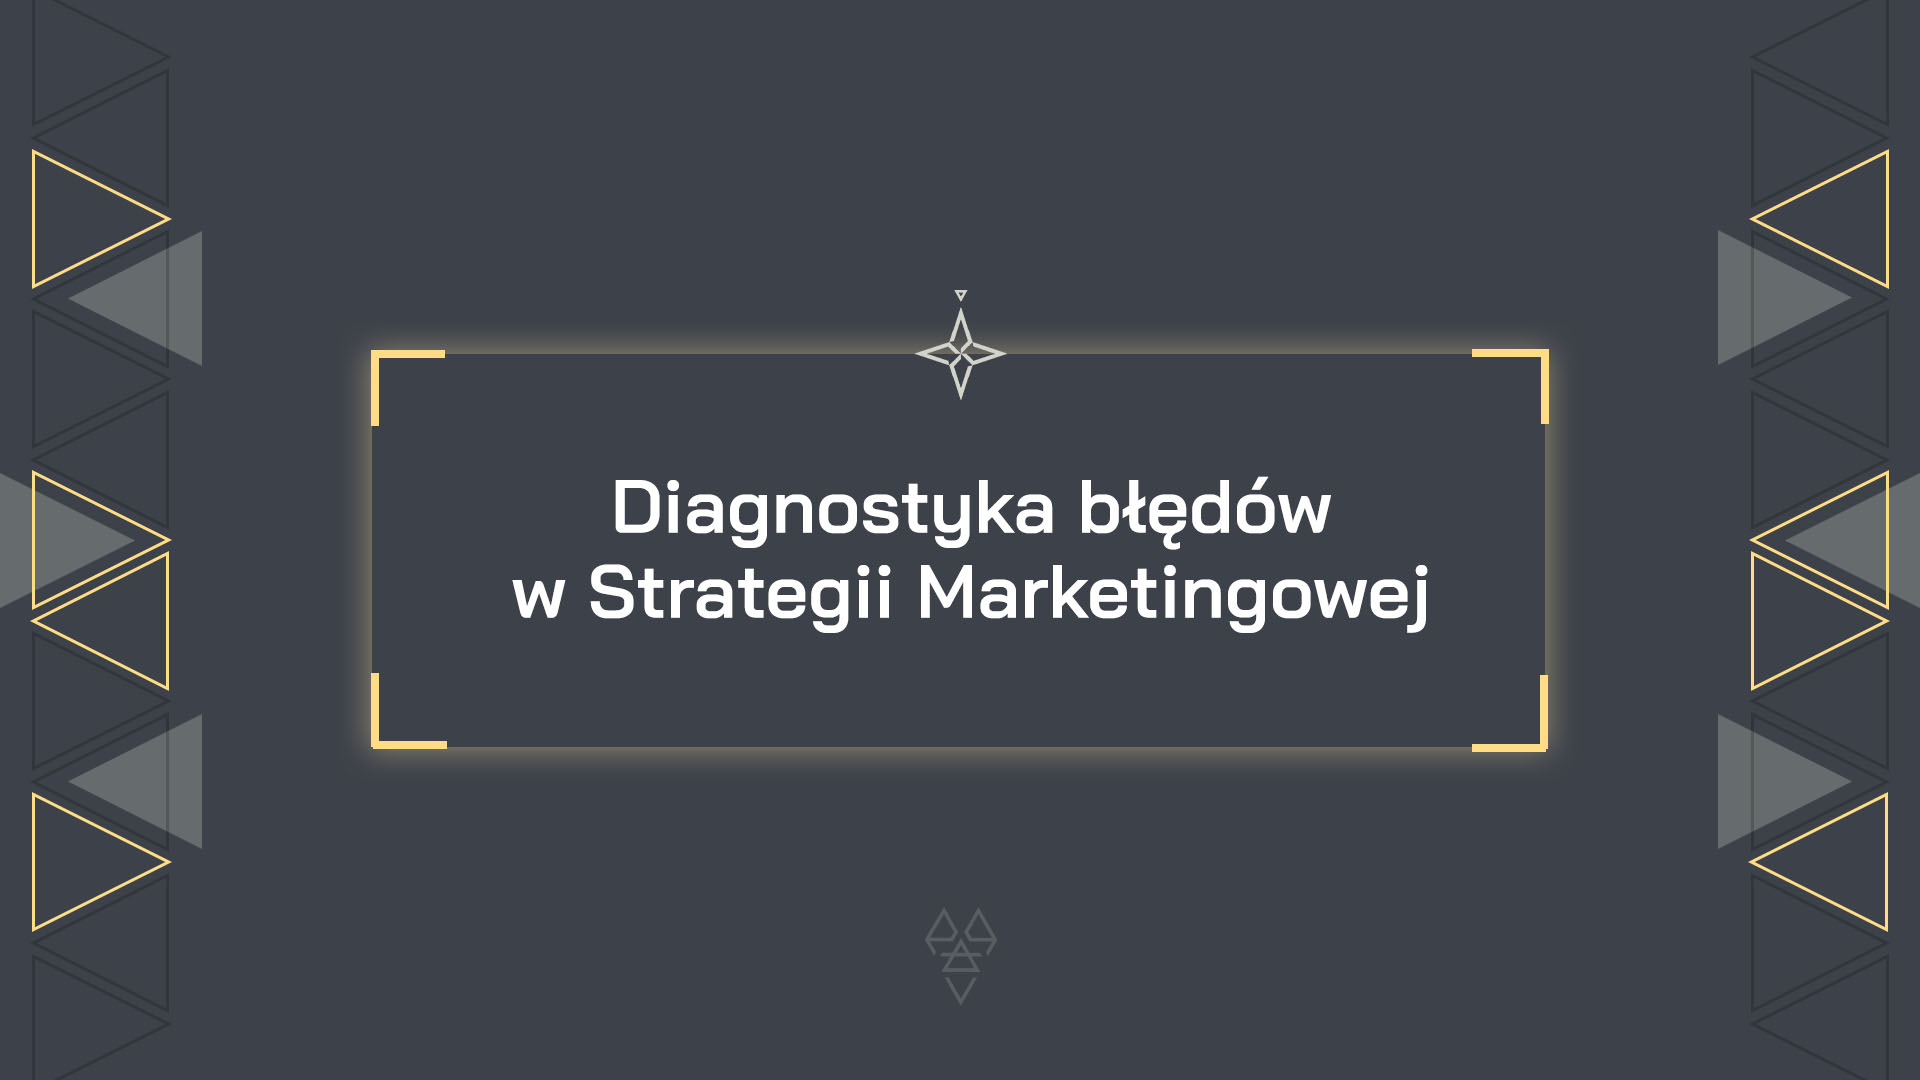 Diagnostyka błędów w Strategii Marketingowej. Matt Kosmaczewski art